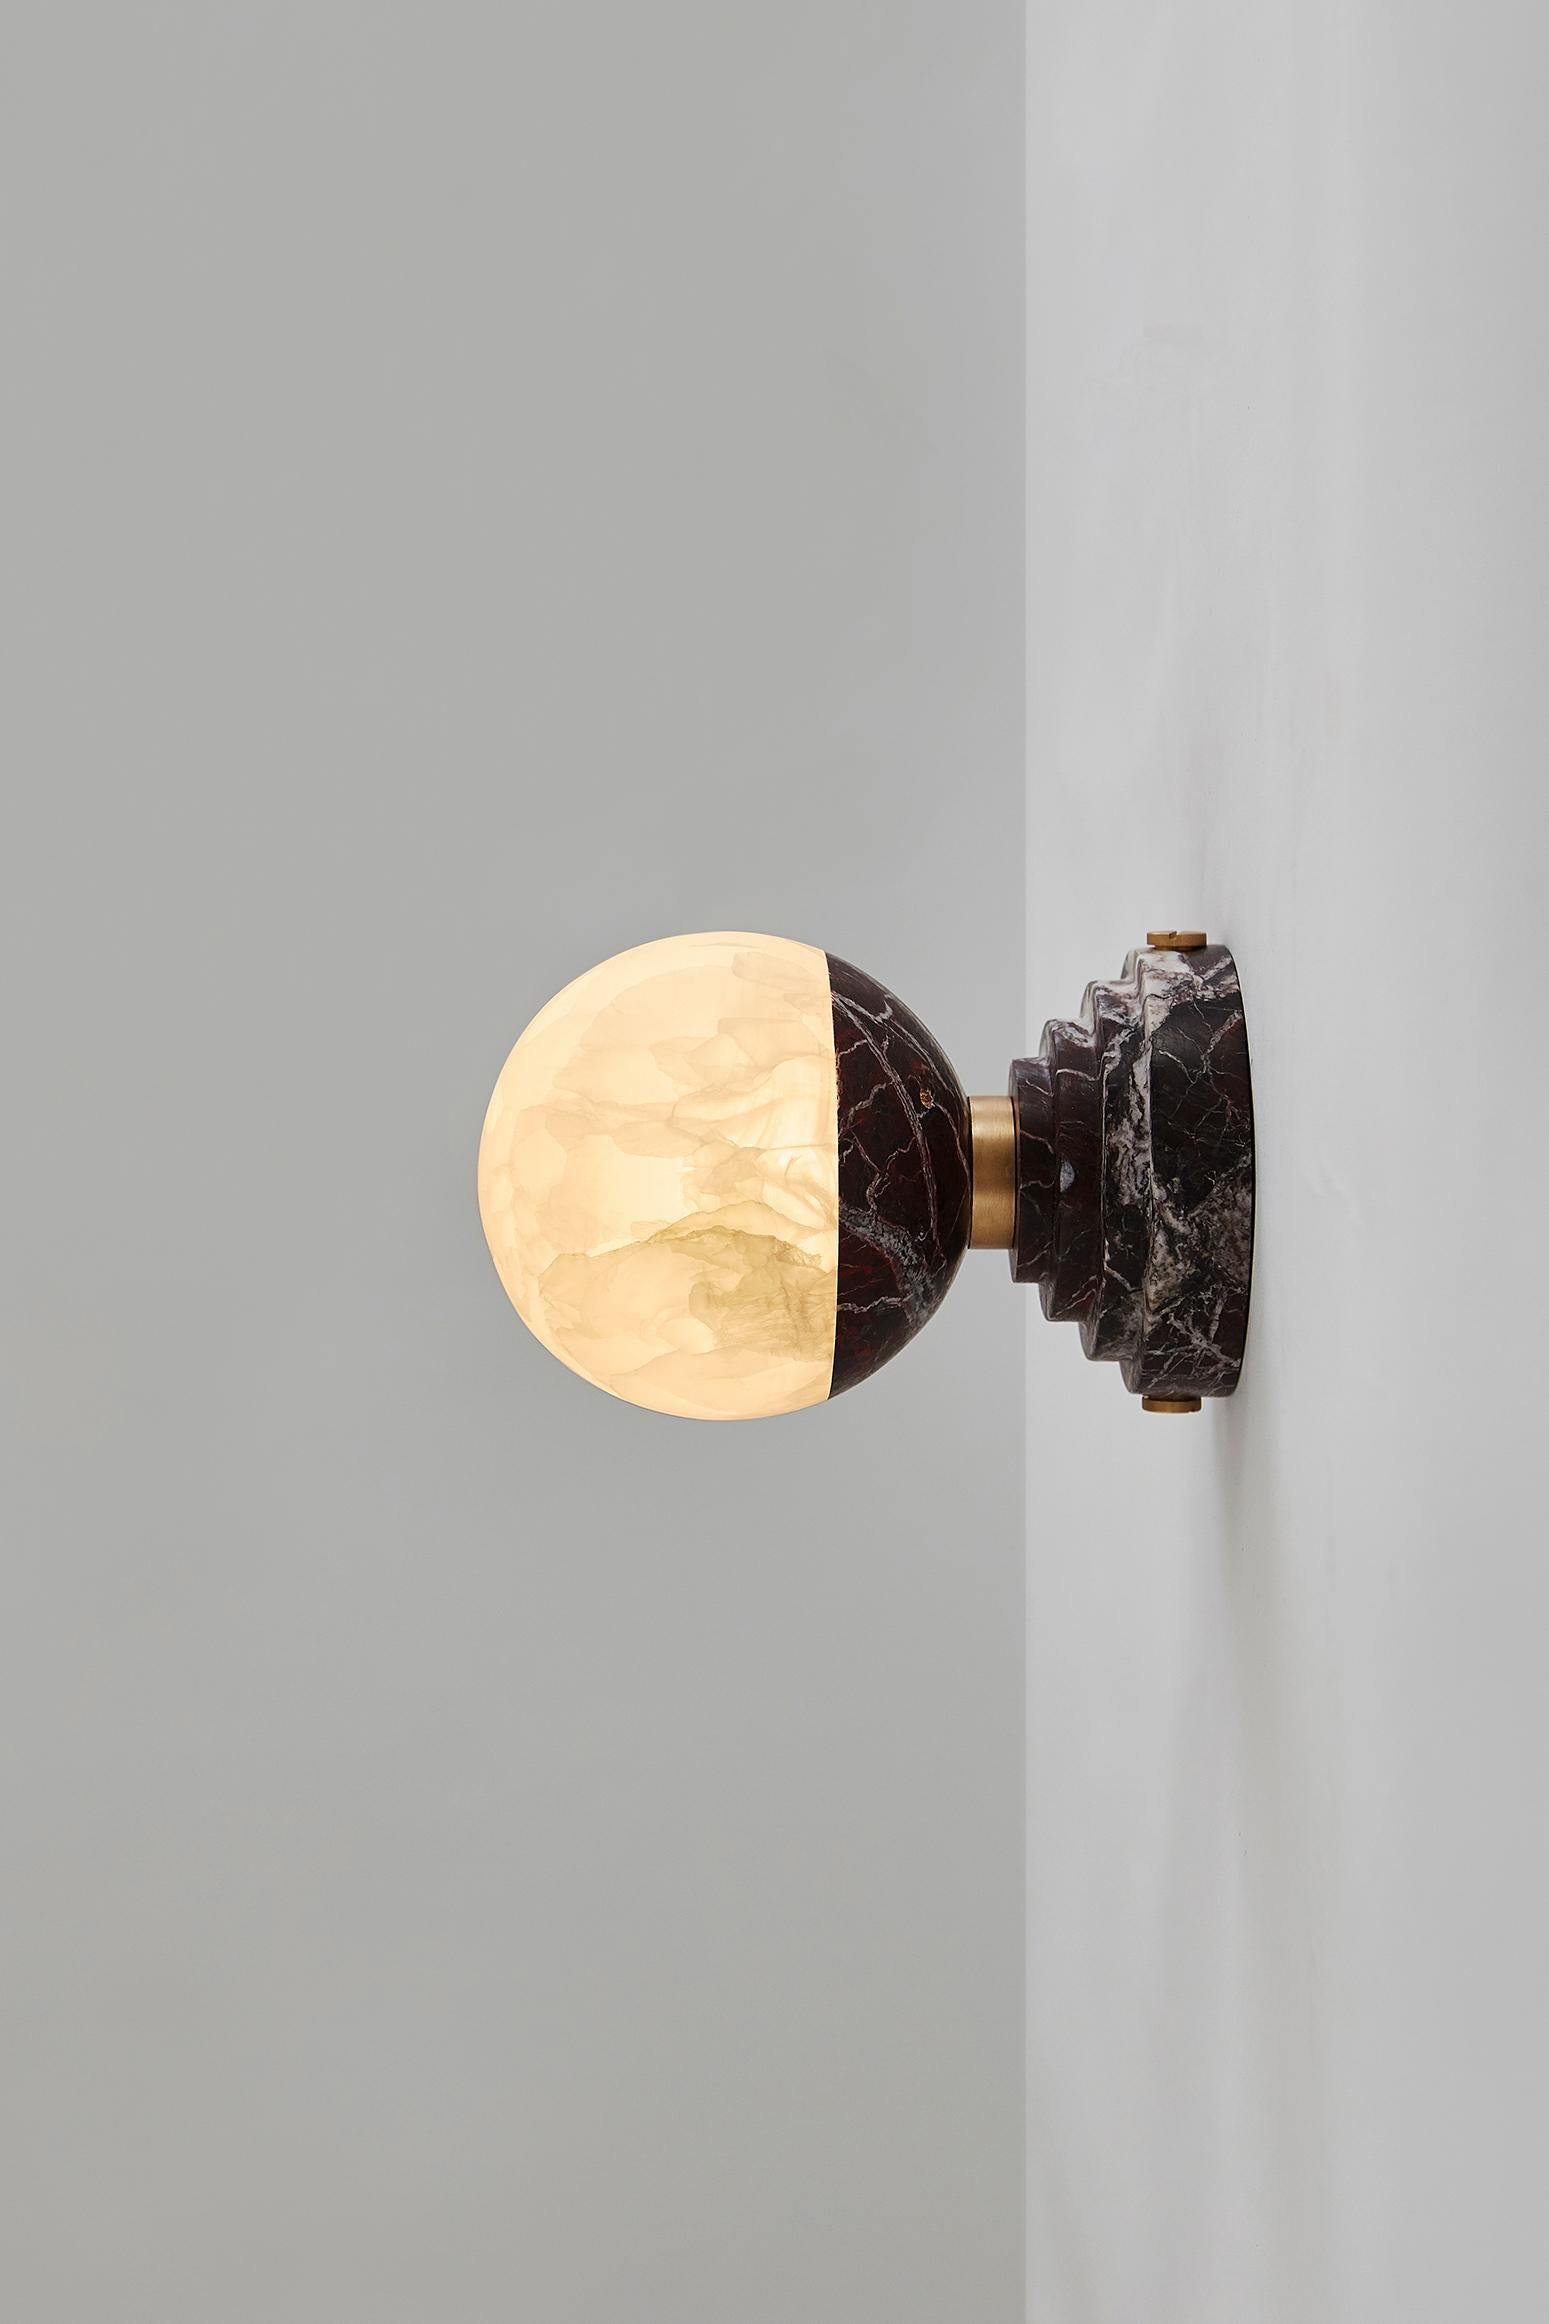 Diese helle Onyx-Ampulle, die den Raum in ein warmes und gemütliches Licht taucht, ist eine Liebeserklärung an den silbernen Mond, der so viele Dichter und Künstler inspiriert hat. Auf einem Marmorsockel (erhältlich in Grand Antique, Portoro und